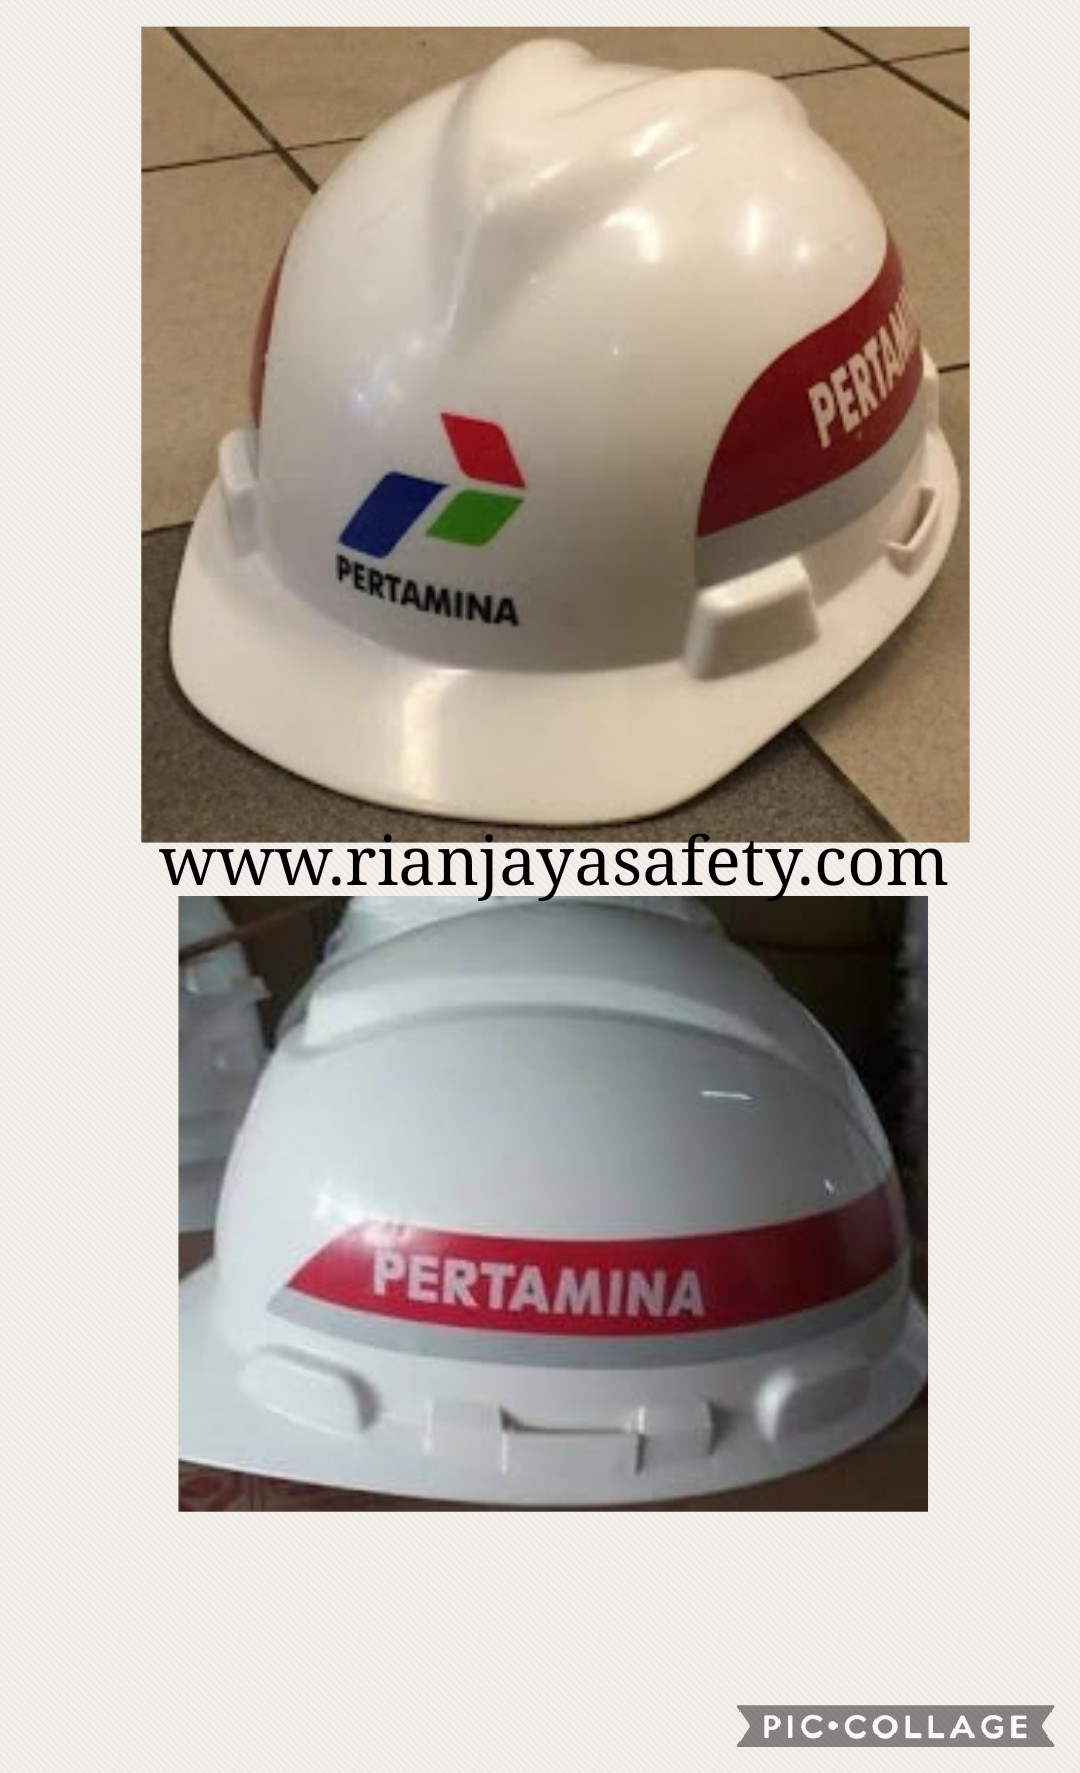 Custom Helm  Pertamina  Klik for detail RIAN JAYA SAFETY 